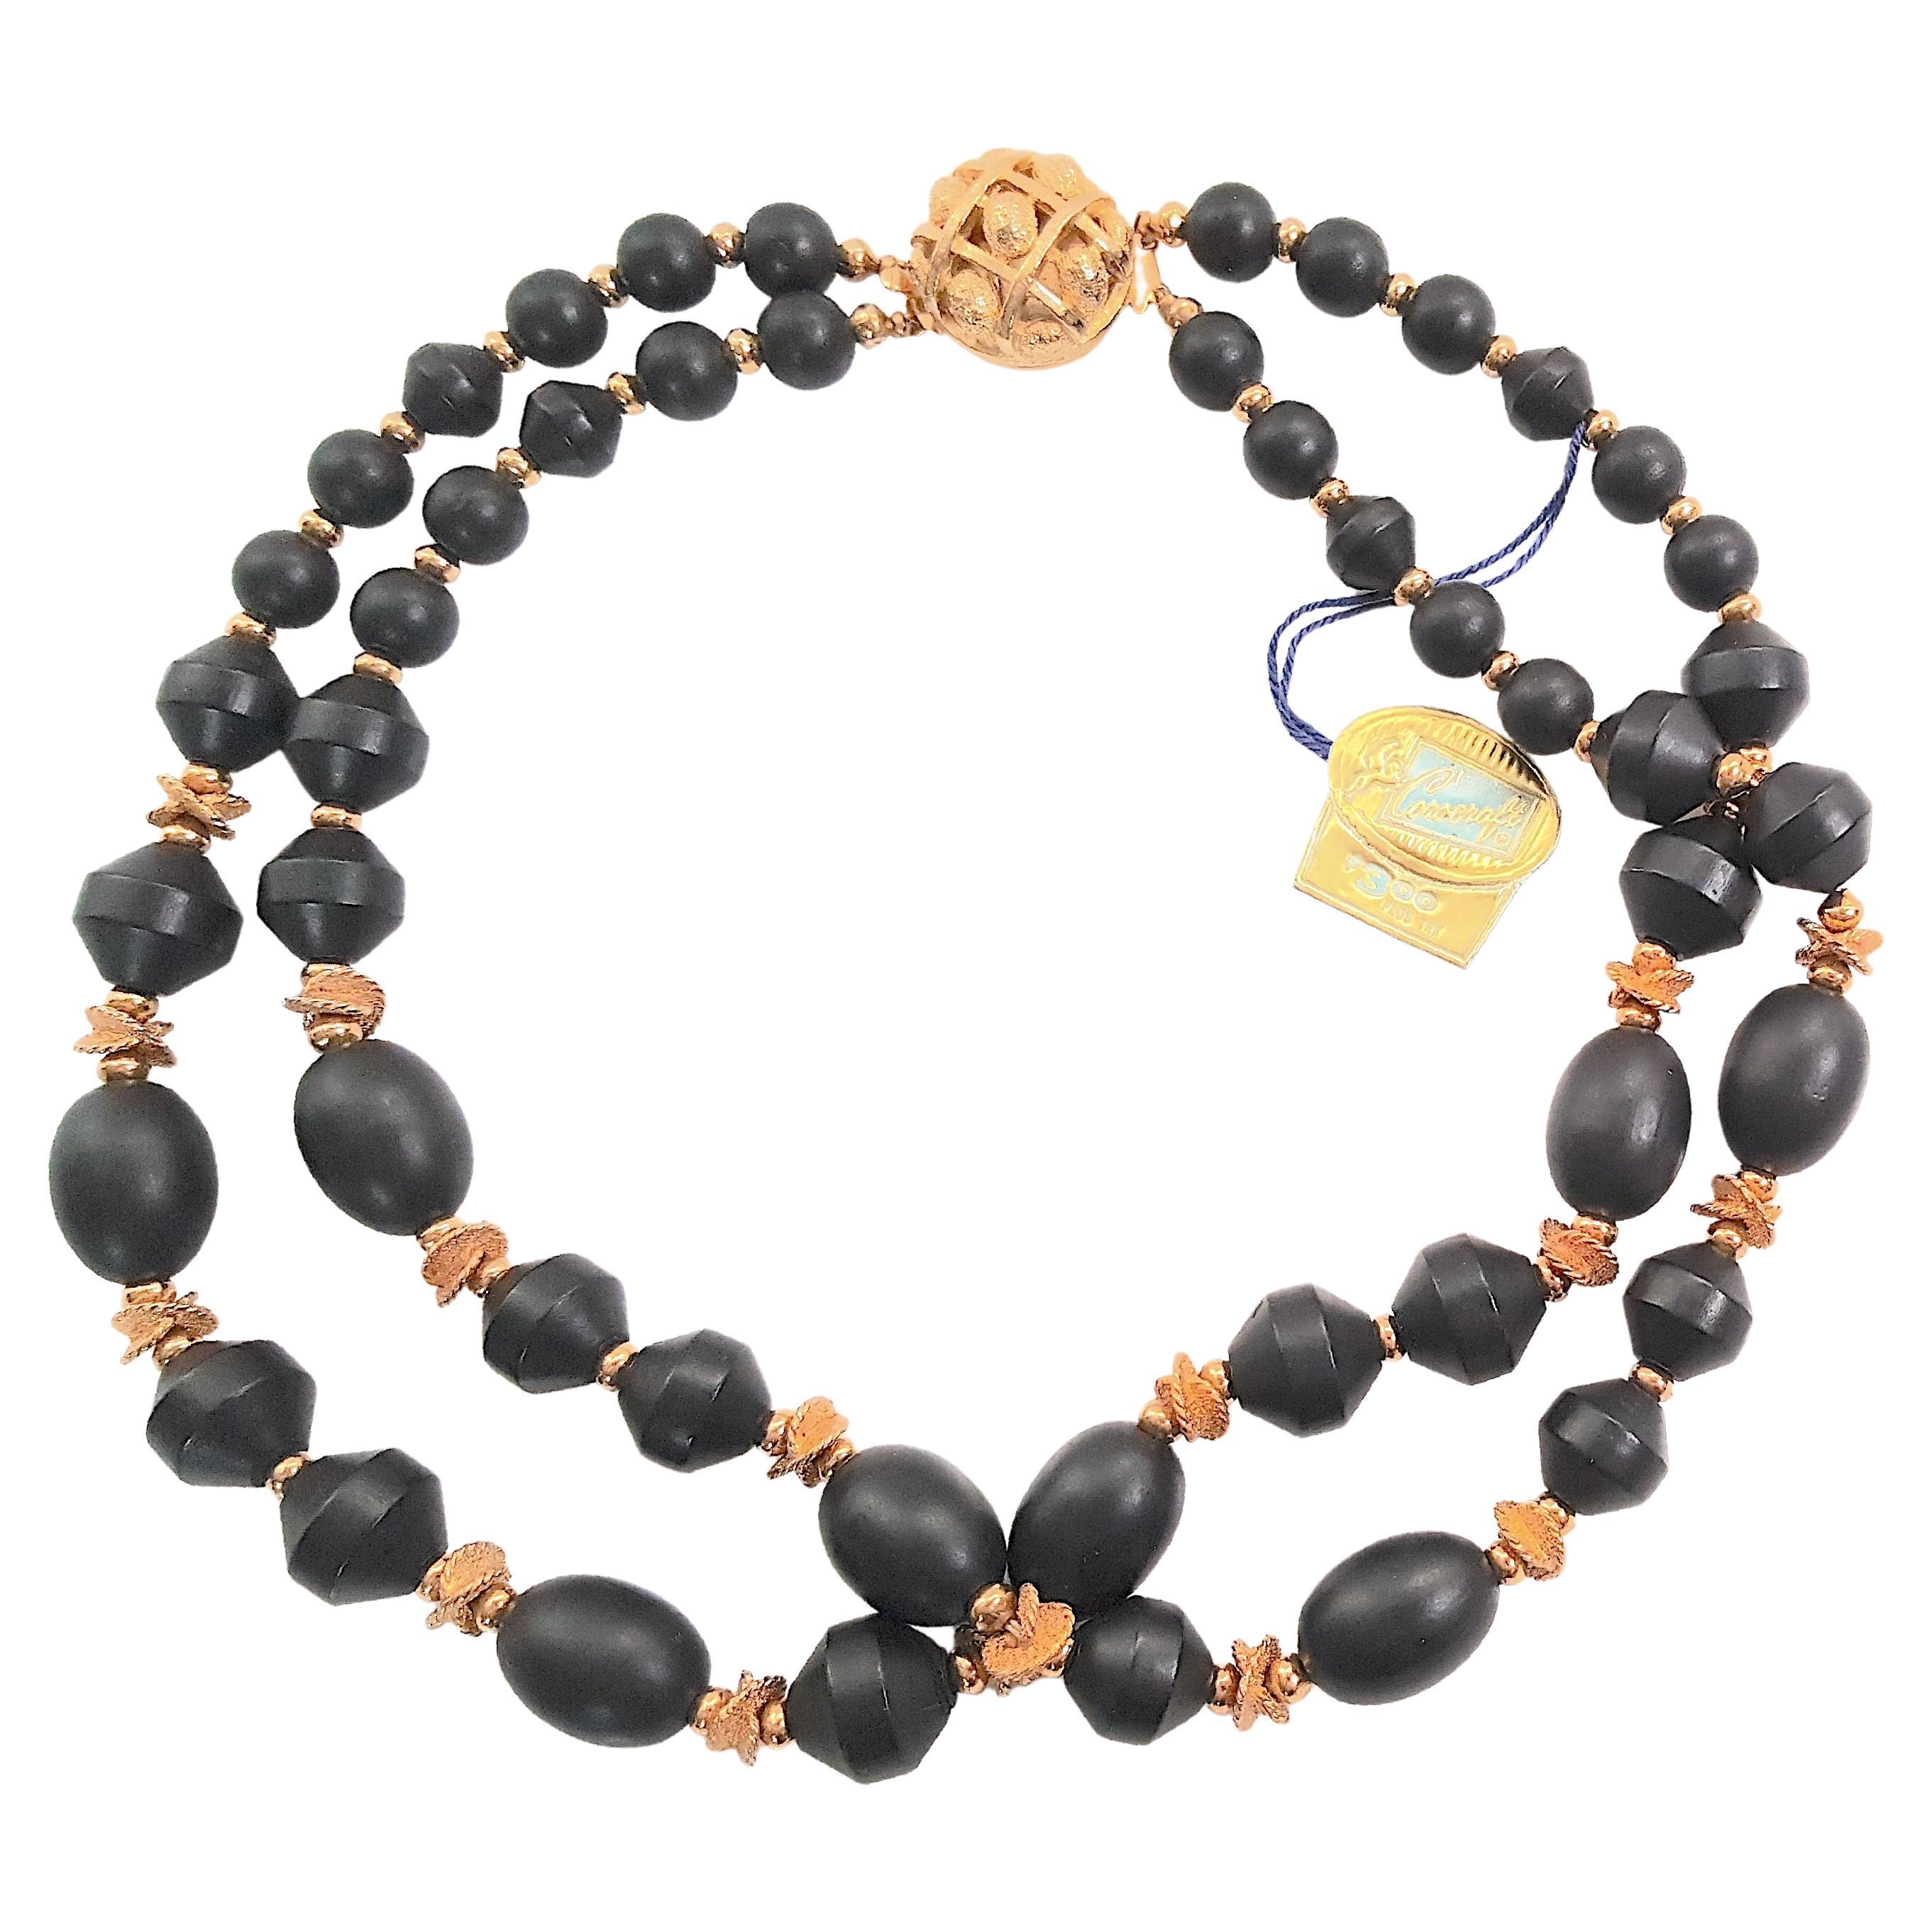 Modern Bakelite 1940s CoroCraft GoldGilt & Black Beads 